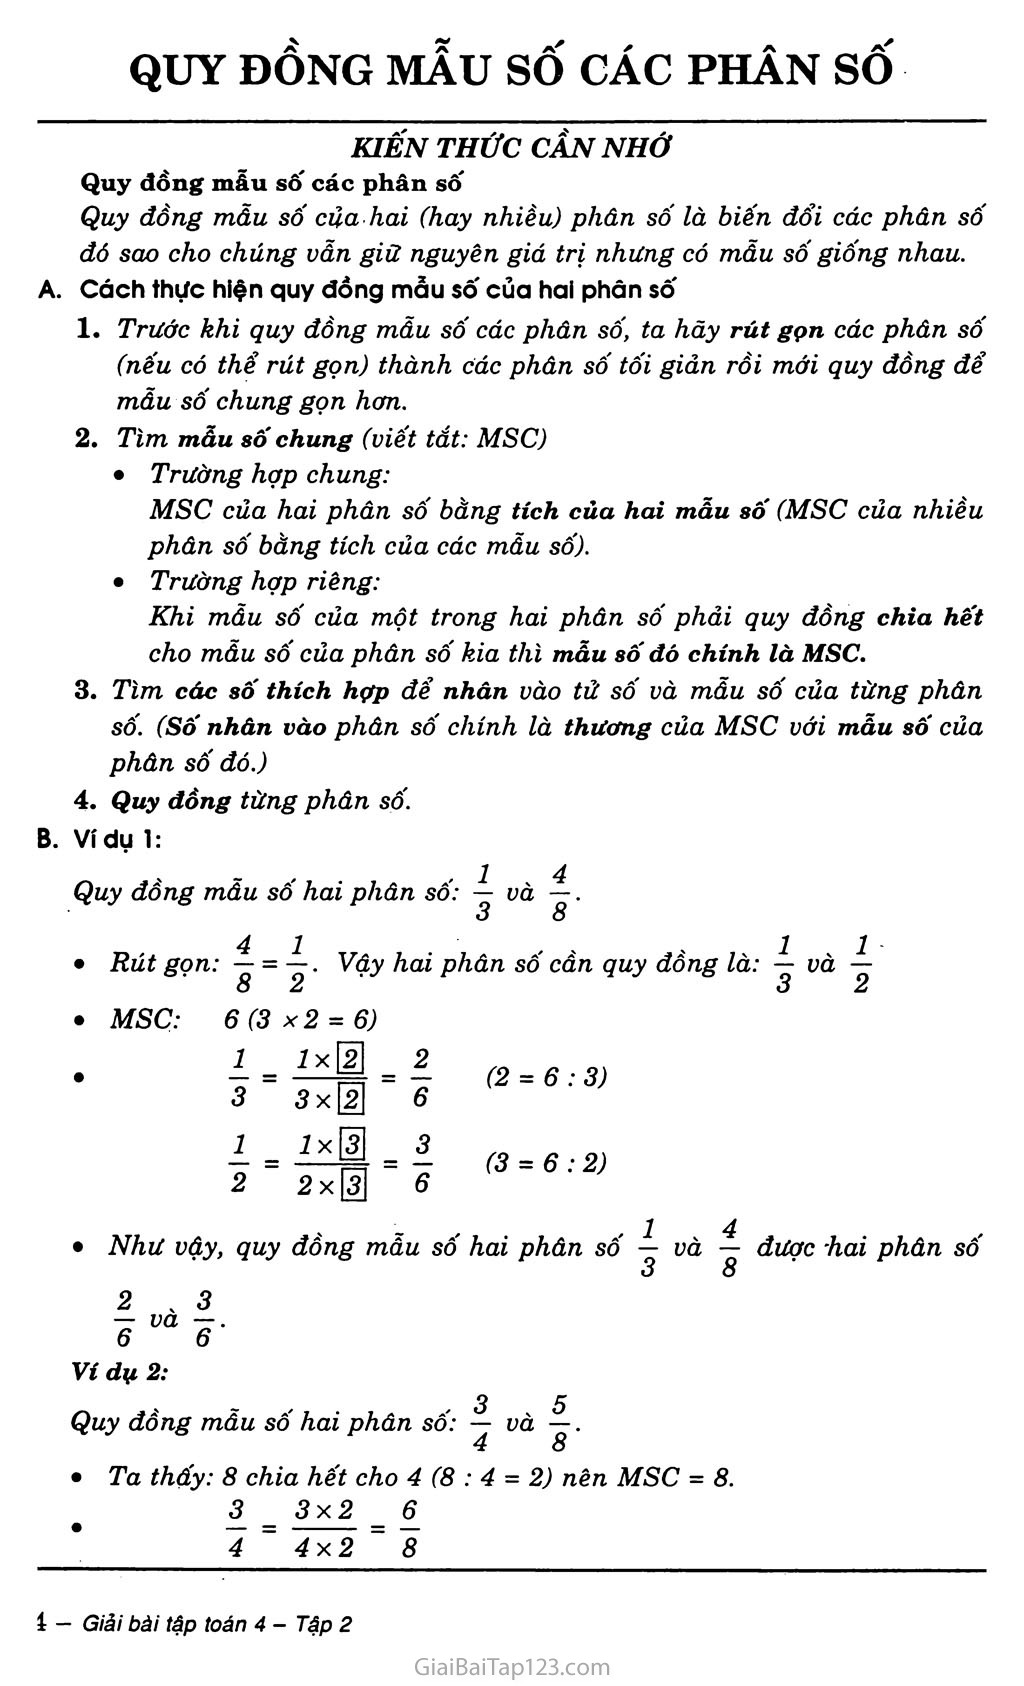 Có những cách nào khác để giải quyết các bài toán liên quan đến quy đồng mẫu số không?